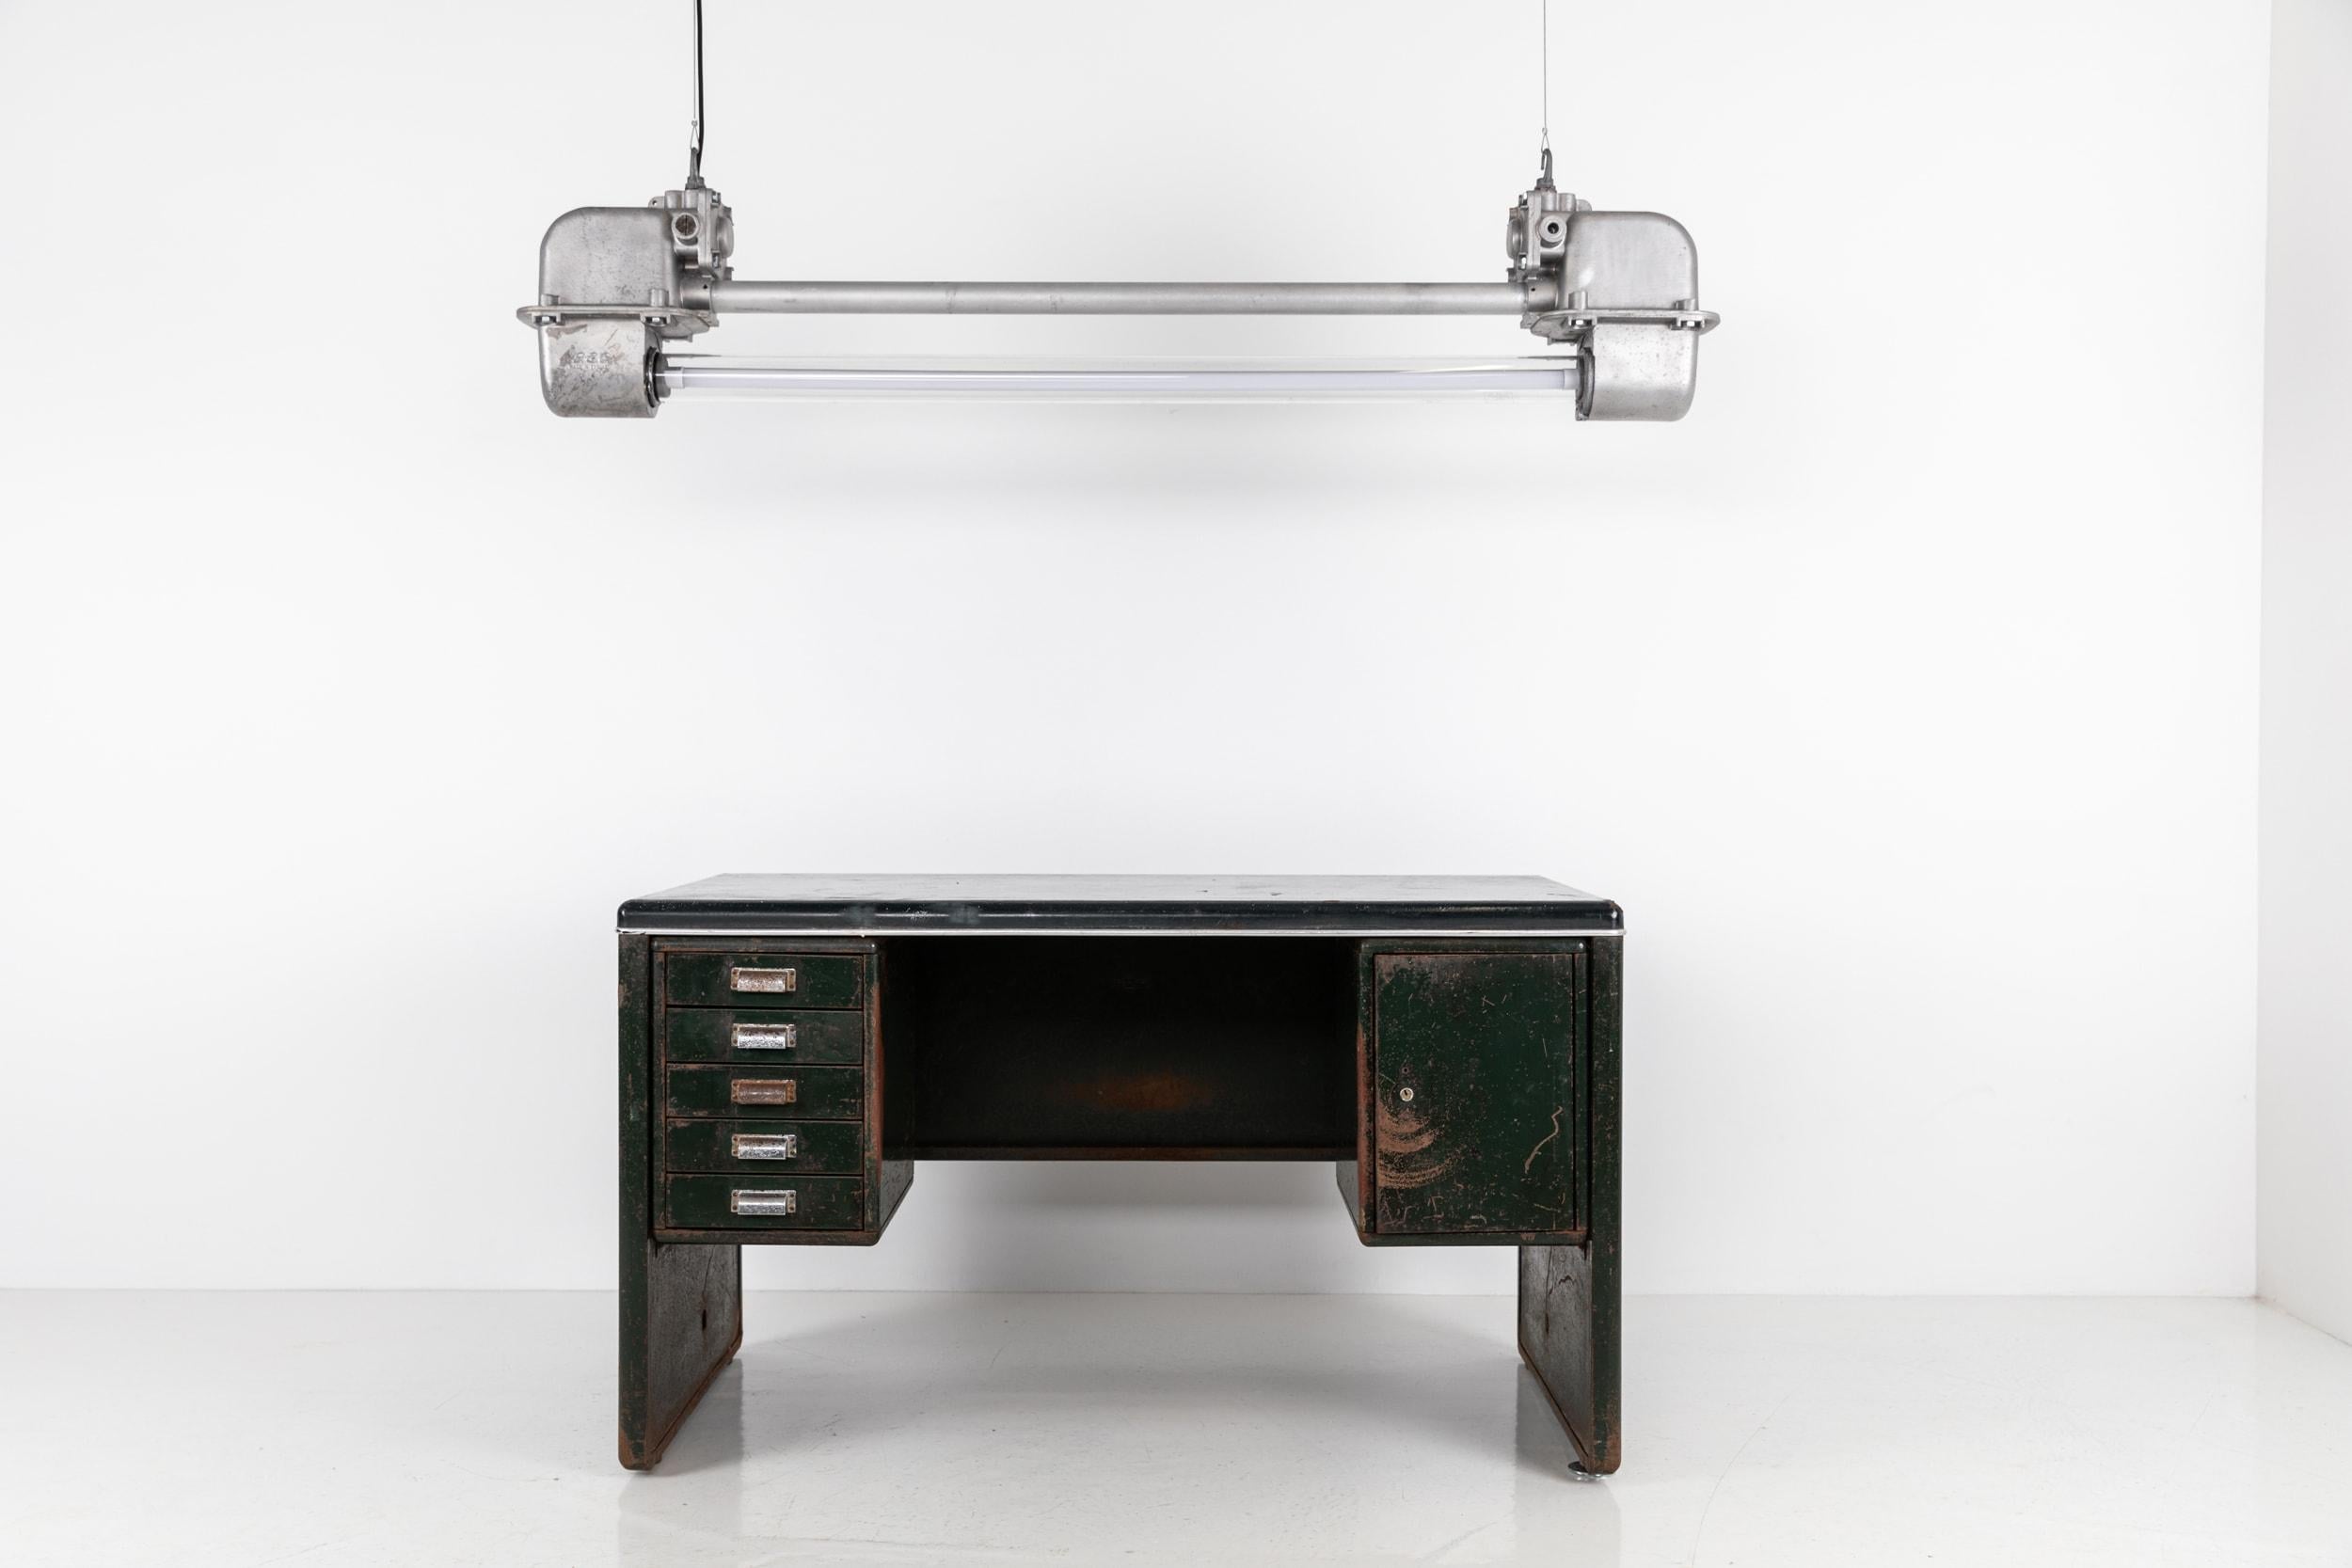 Vintage Industrial Mid-Century Metal Steel Milner's Workshop Factory Desk Table 4